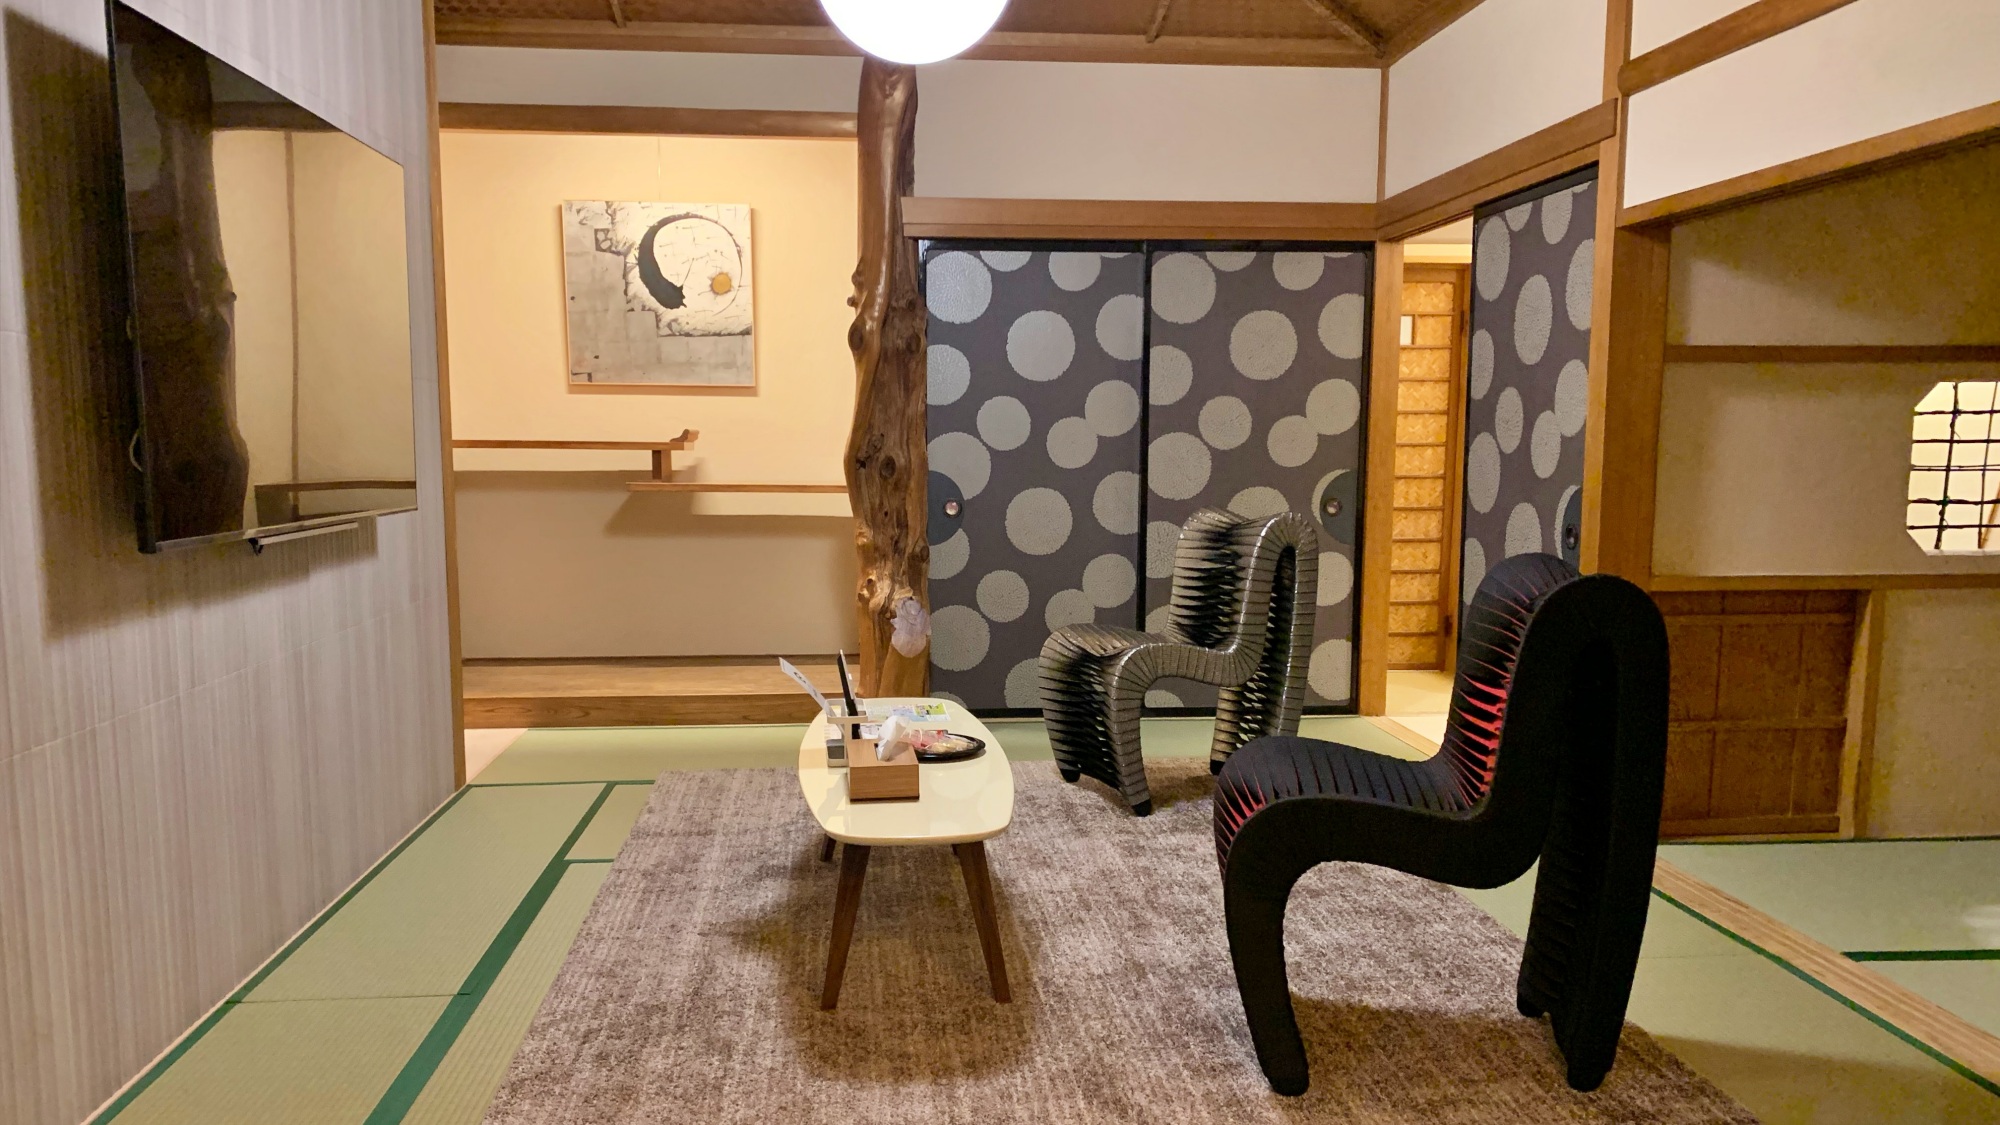 【315】昔ながらの和室をアレンジした過ごしやすい和モダンタイプのお部屋。